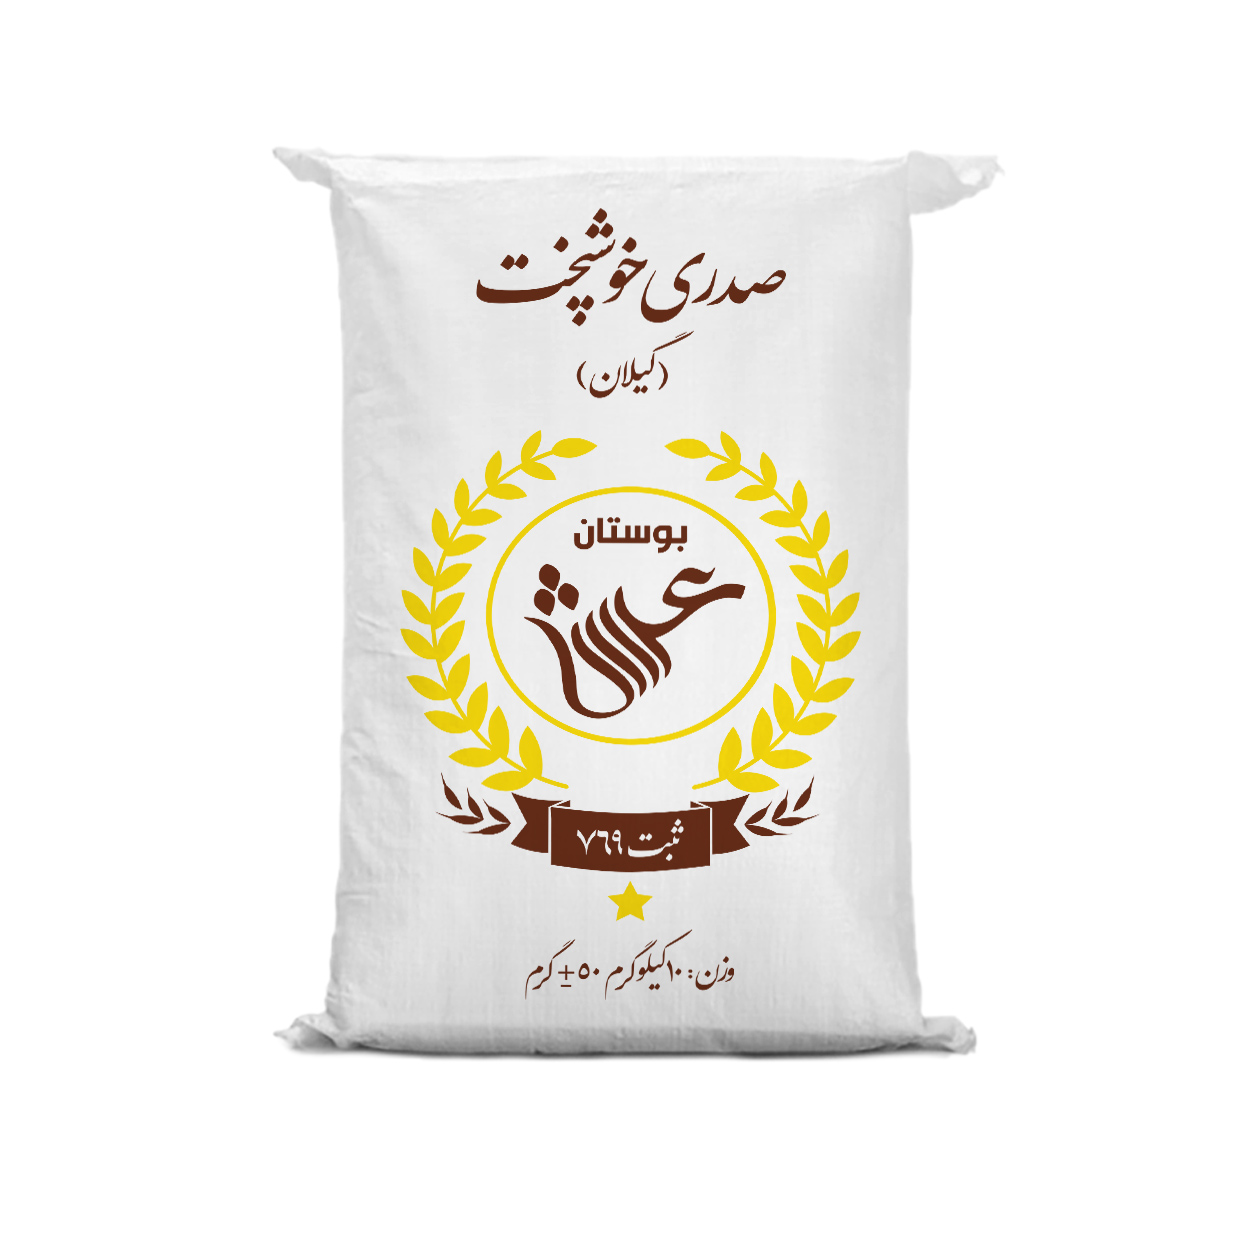 نکته خرید - قیمت روز برنج ایرانی صدری خوش پخت گیلان بوستان عرش - 10 کیلوگرم خرید